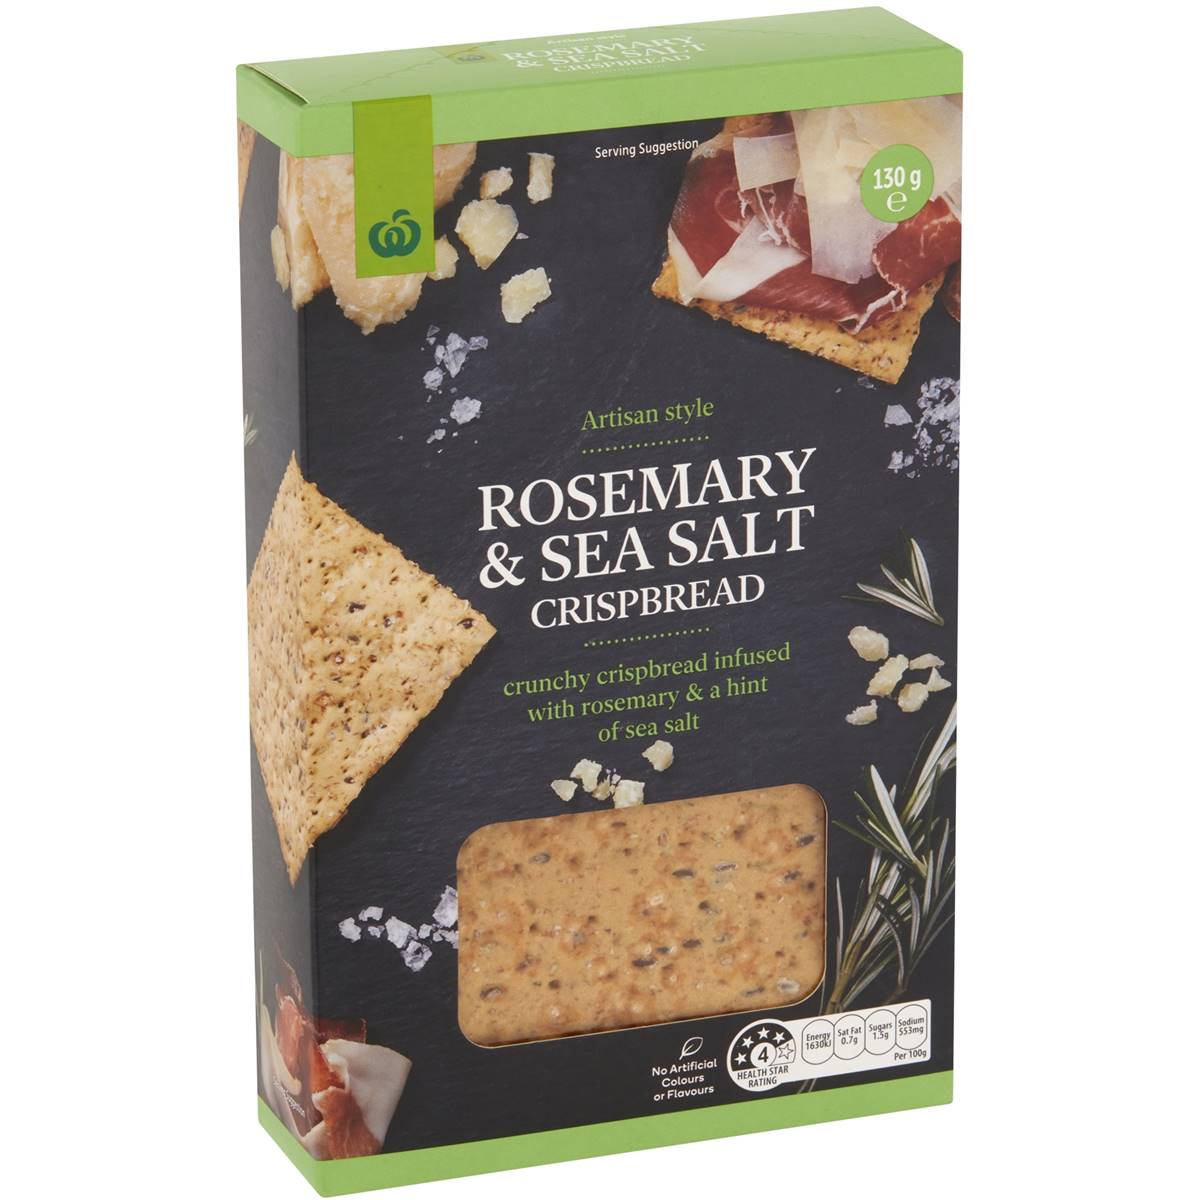 Calories in Woolworths Artisan Style Rosemary & Sea Salt Crispbread